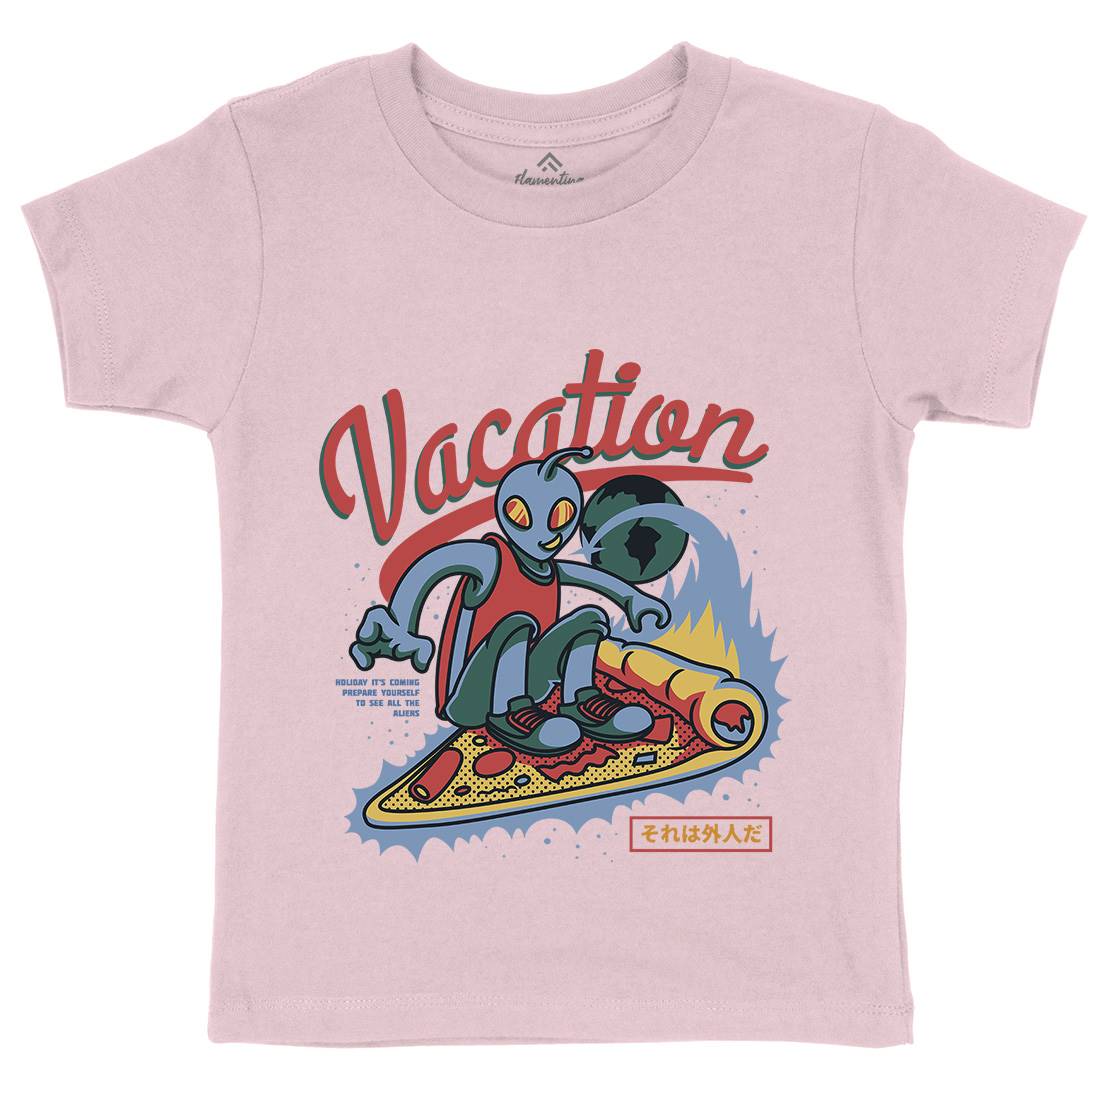 Vacation Mode Kids Organic Crew Neck T-Shirt Surf D871